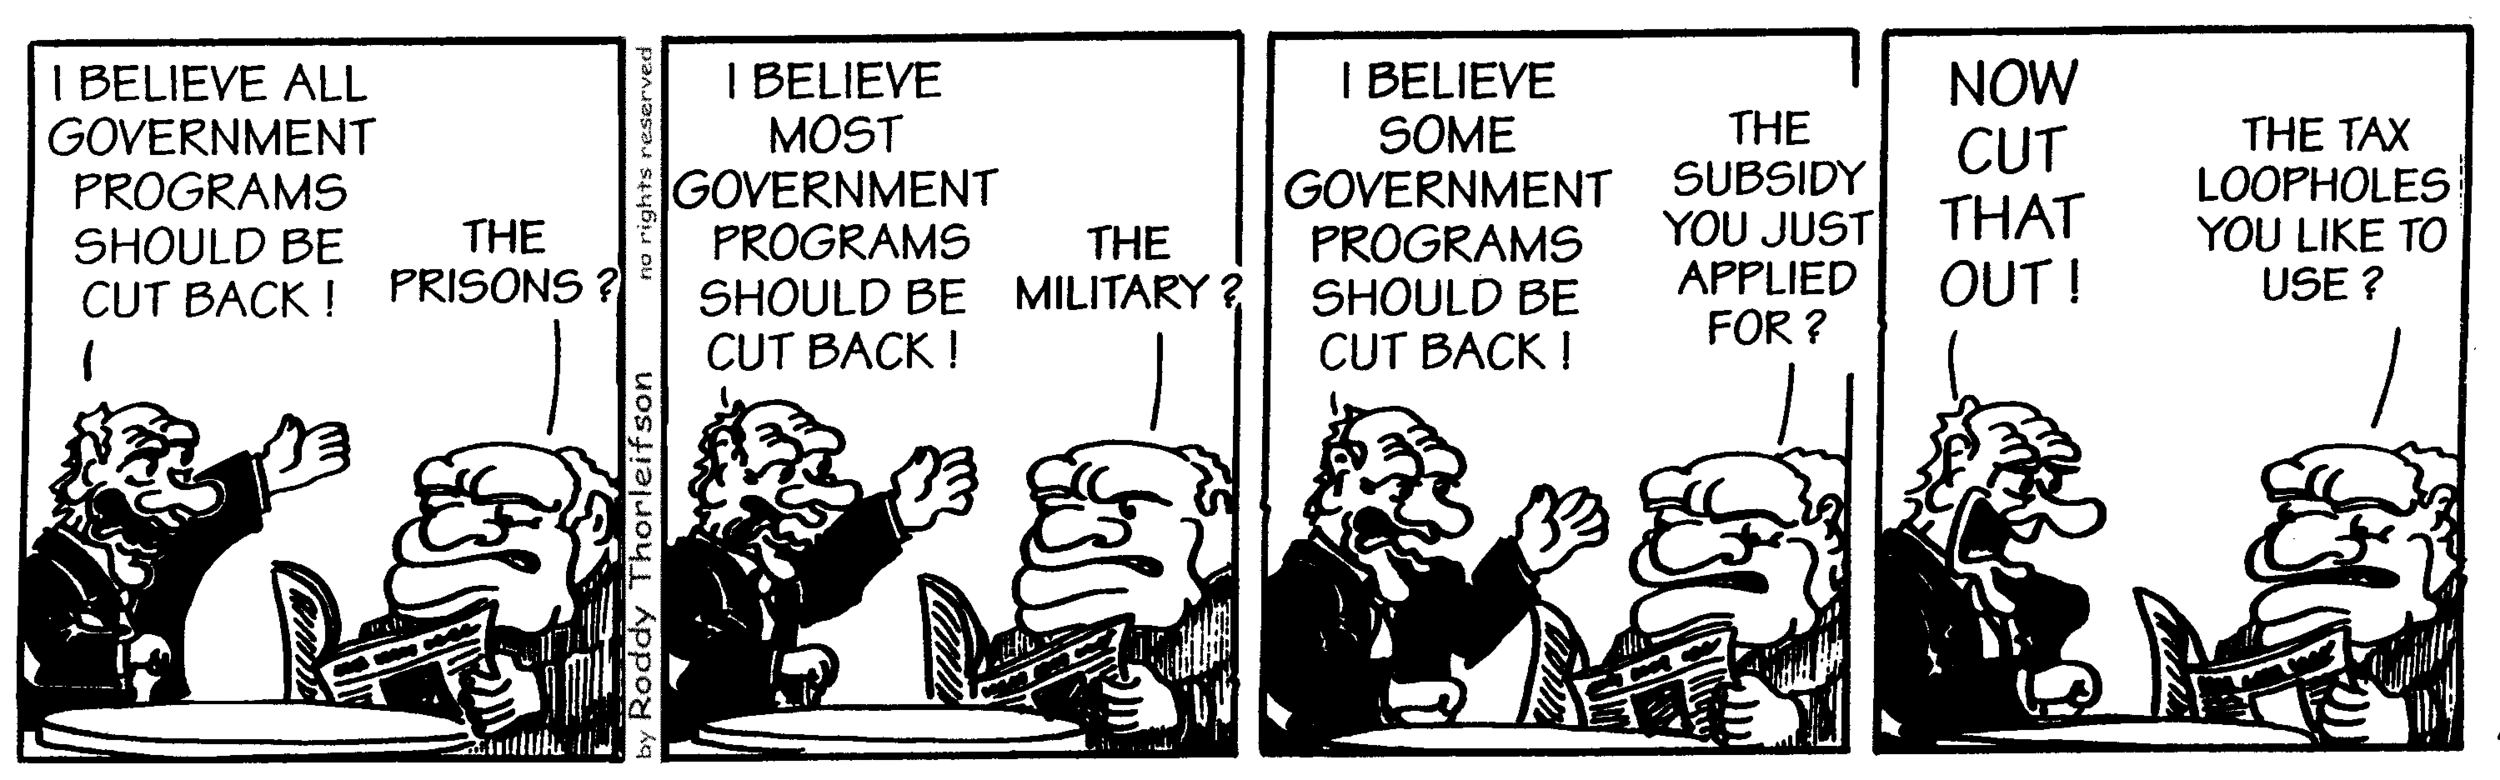 free cartoon government buruaucracy government cutbacks